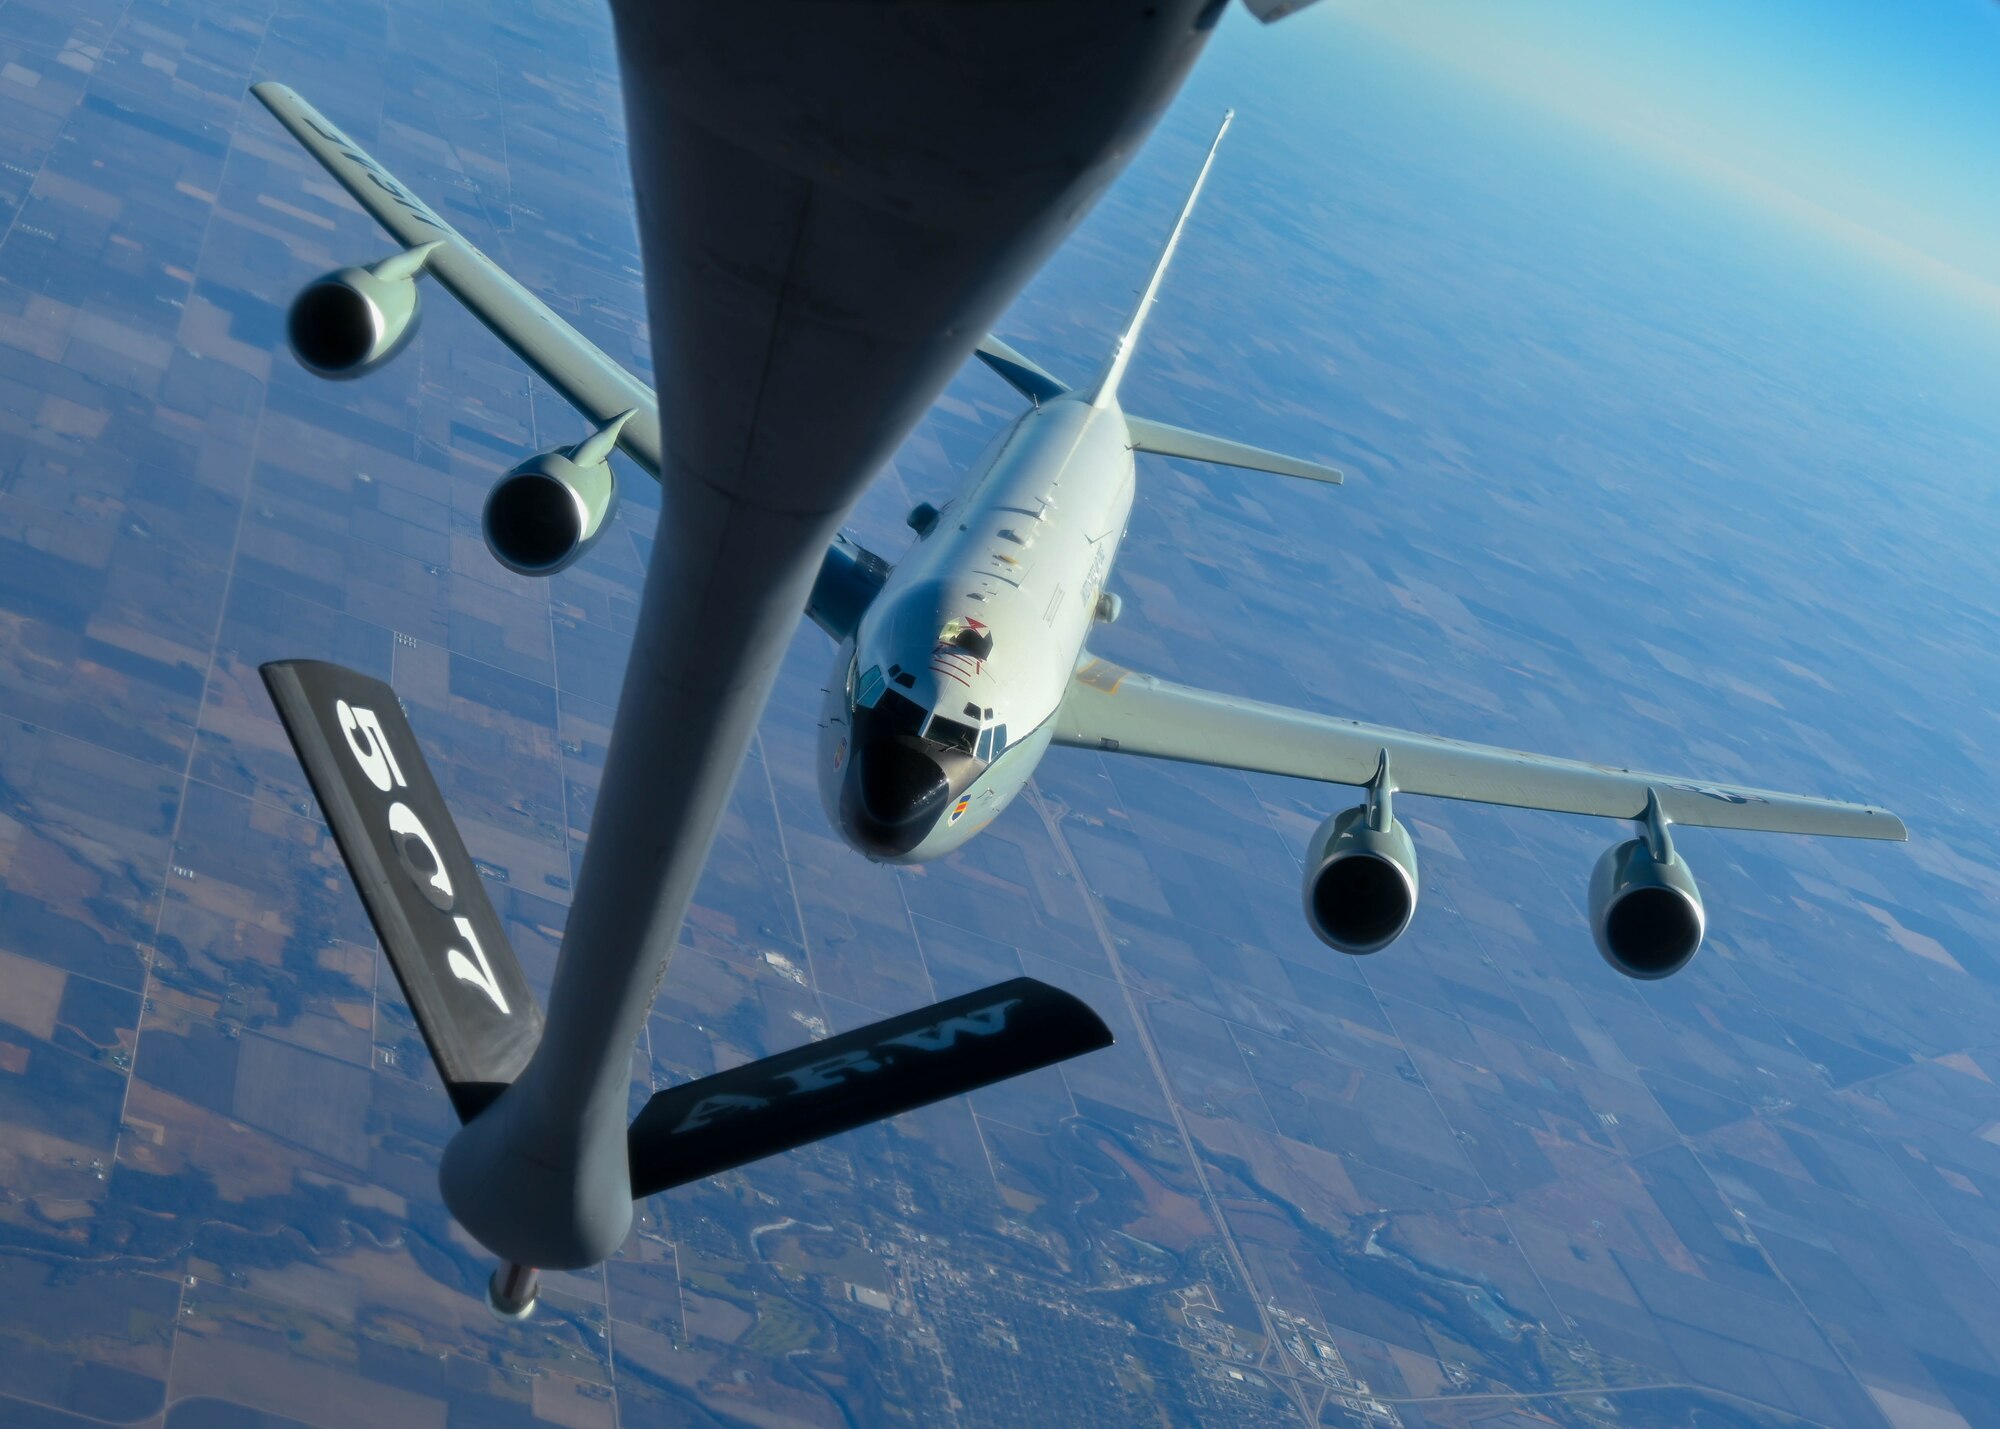 WC-135R flies behind KC-135